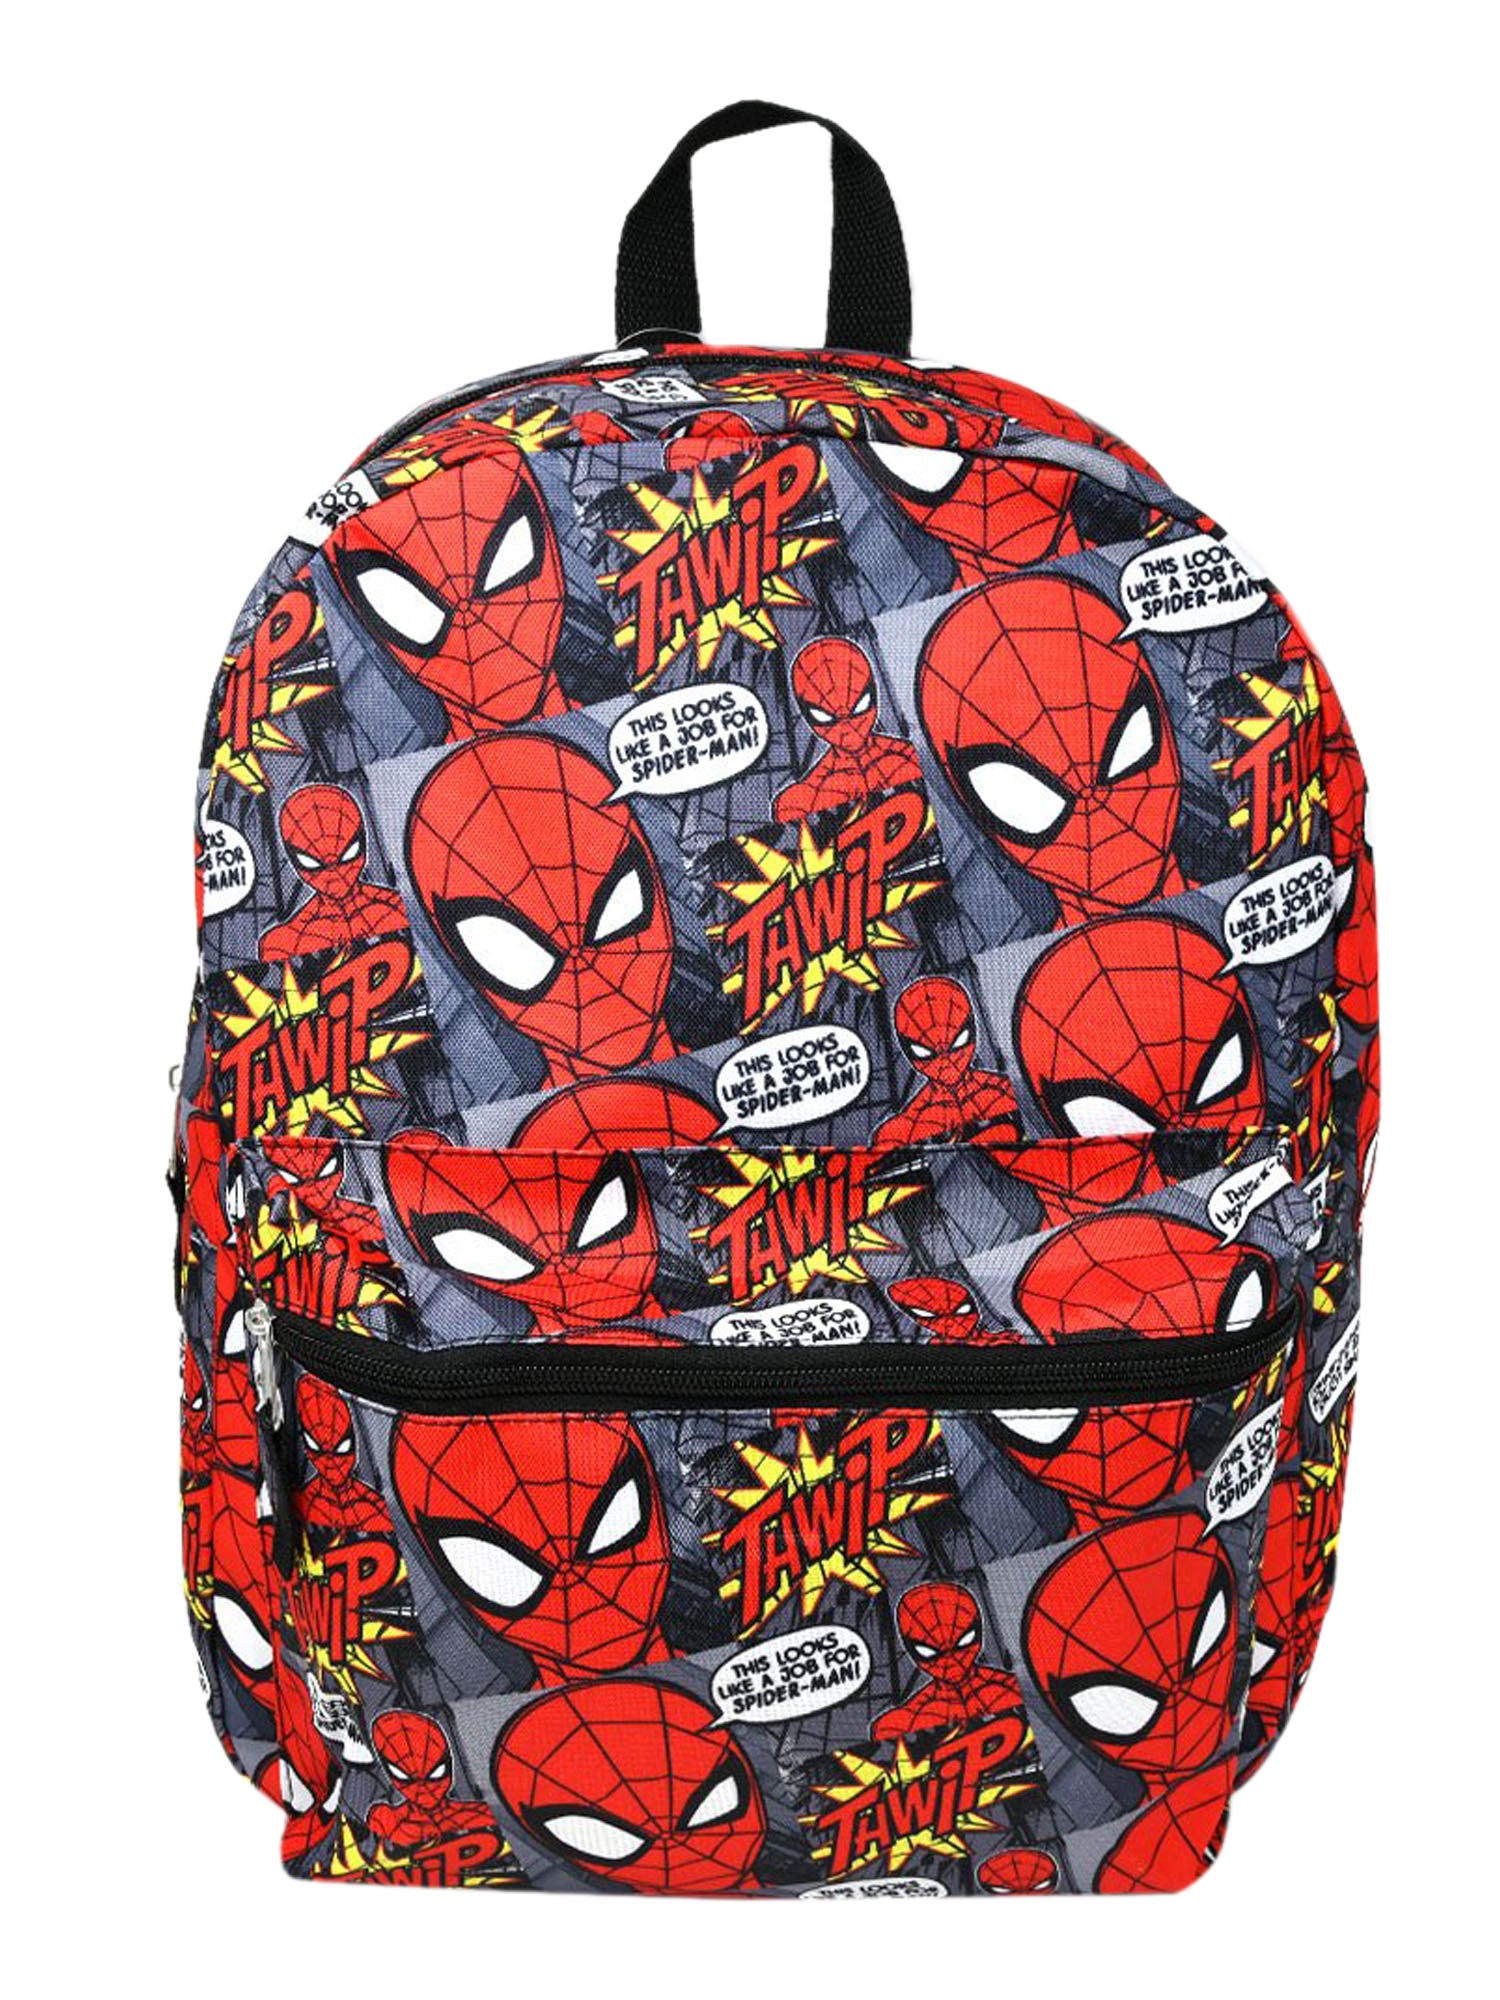 Spider-Man Superhero Backpack 16" All-Over Print & Sliding Pencil Case Set